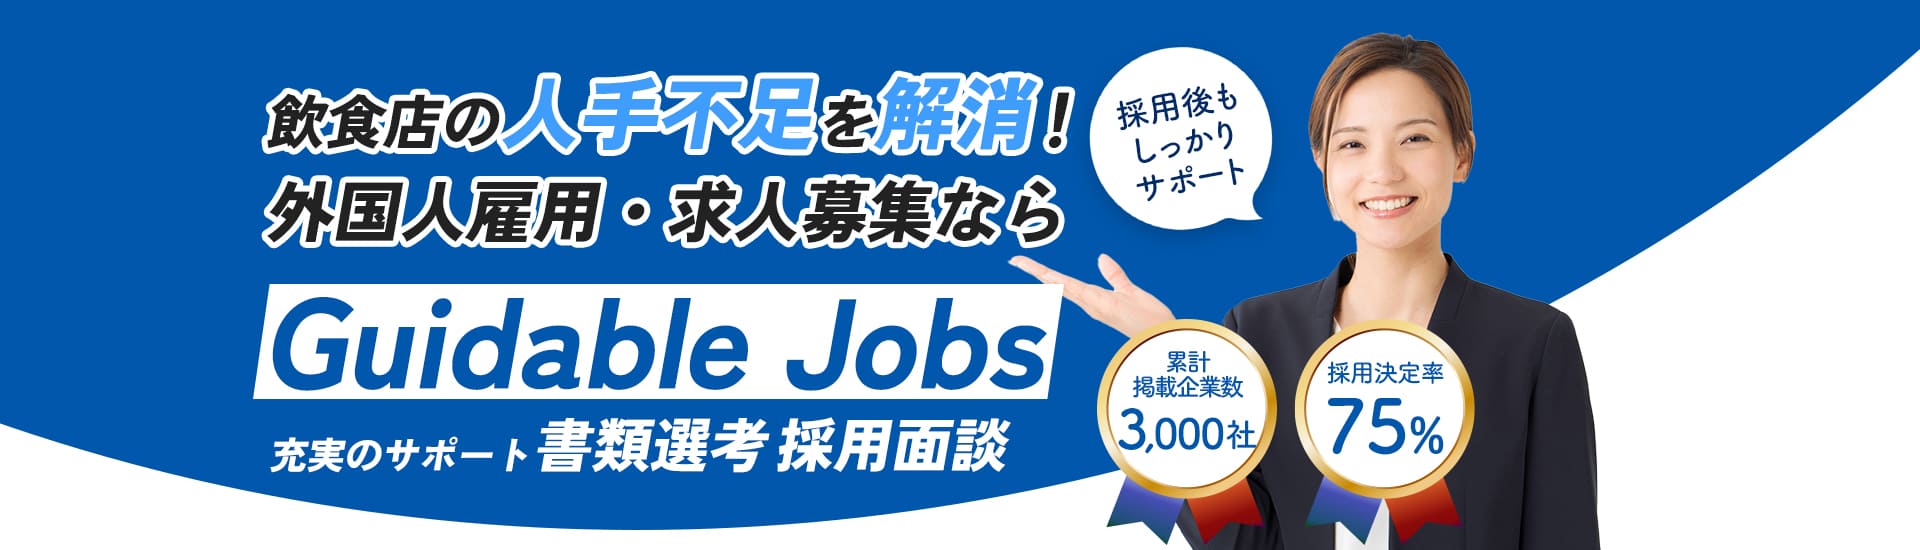 秋田市の求人・人材募集(正社員・アルバイト・パート・派遣)で外国人の採用をサポート